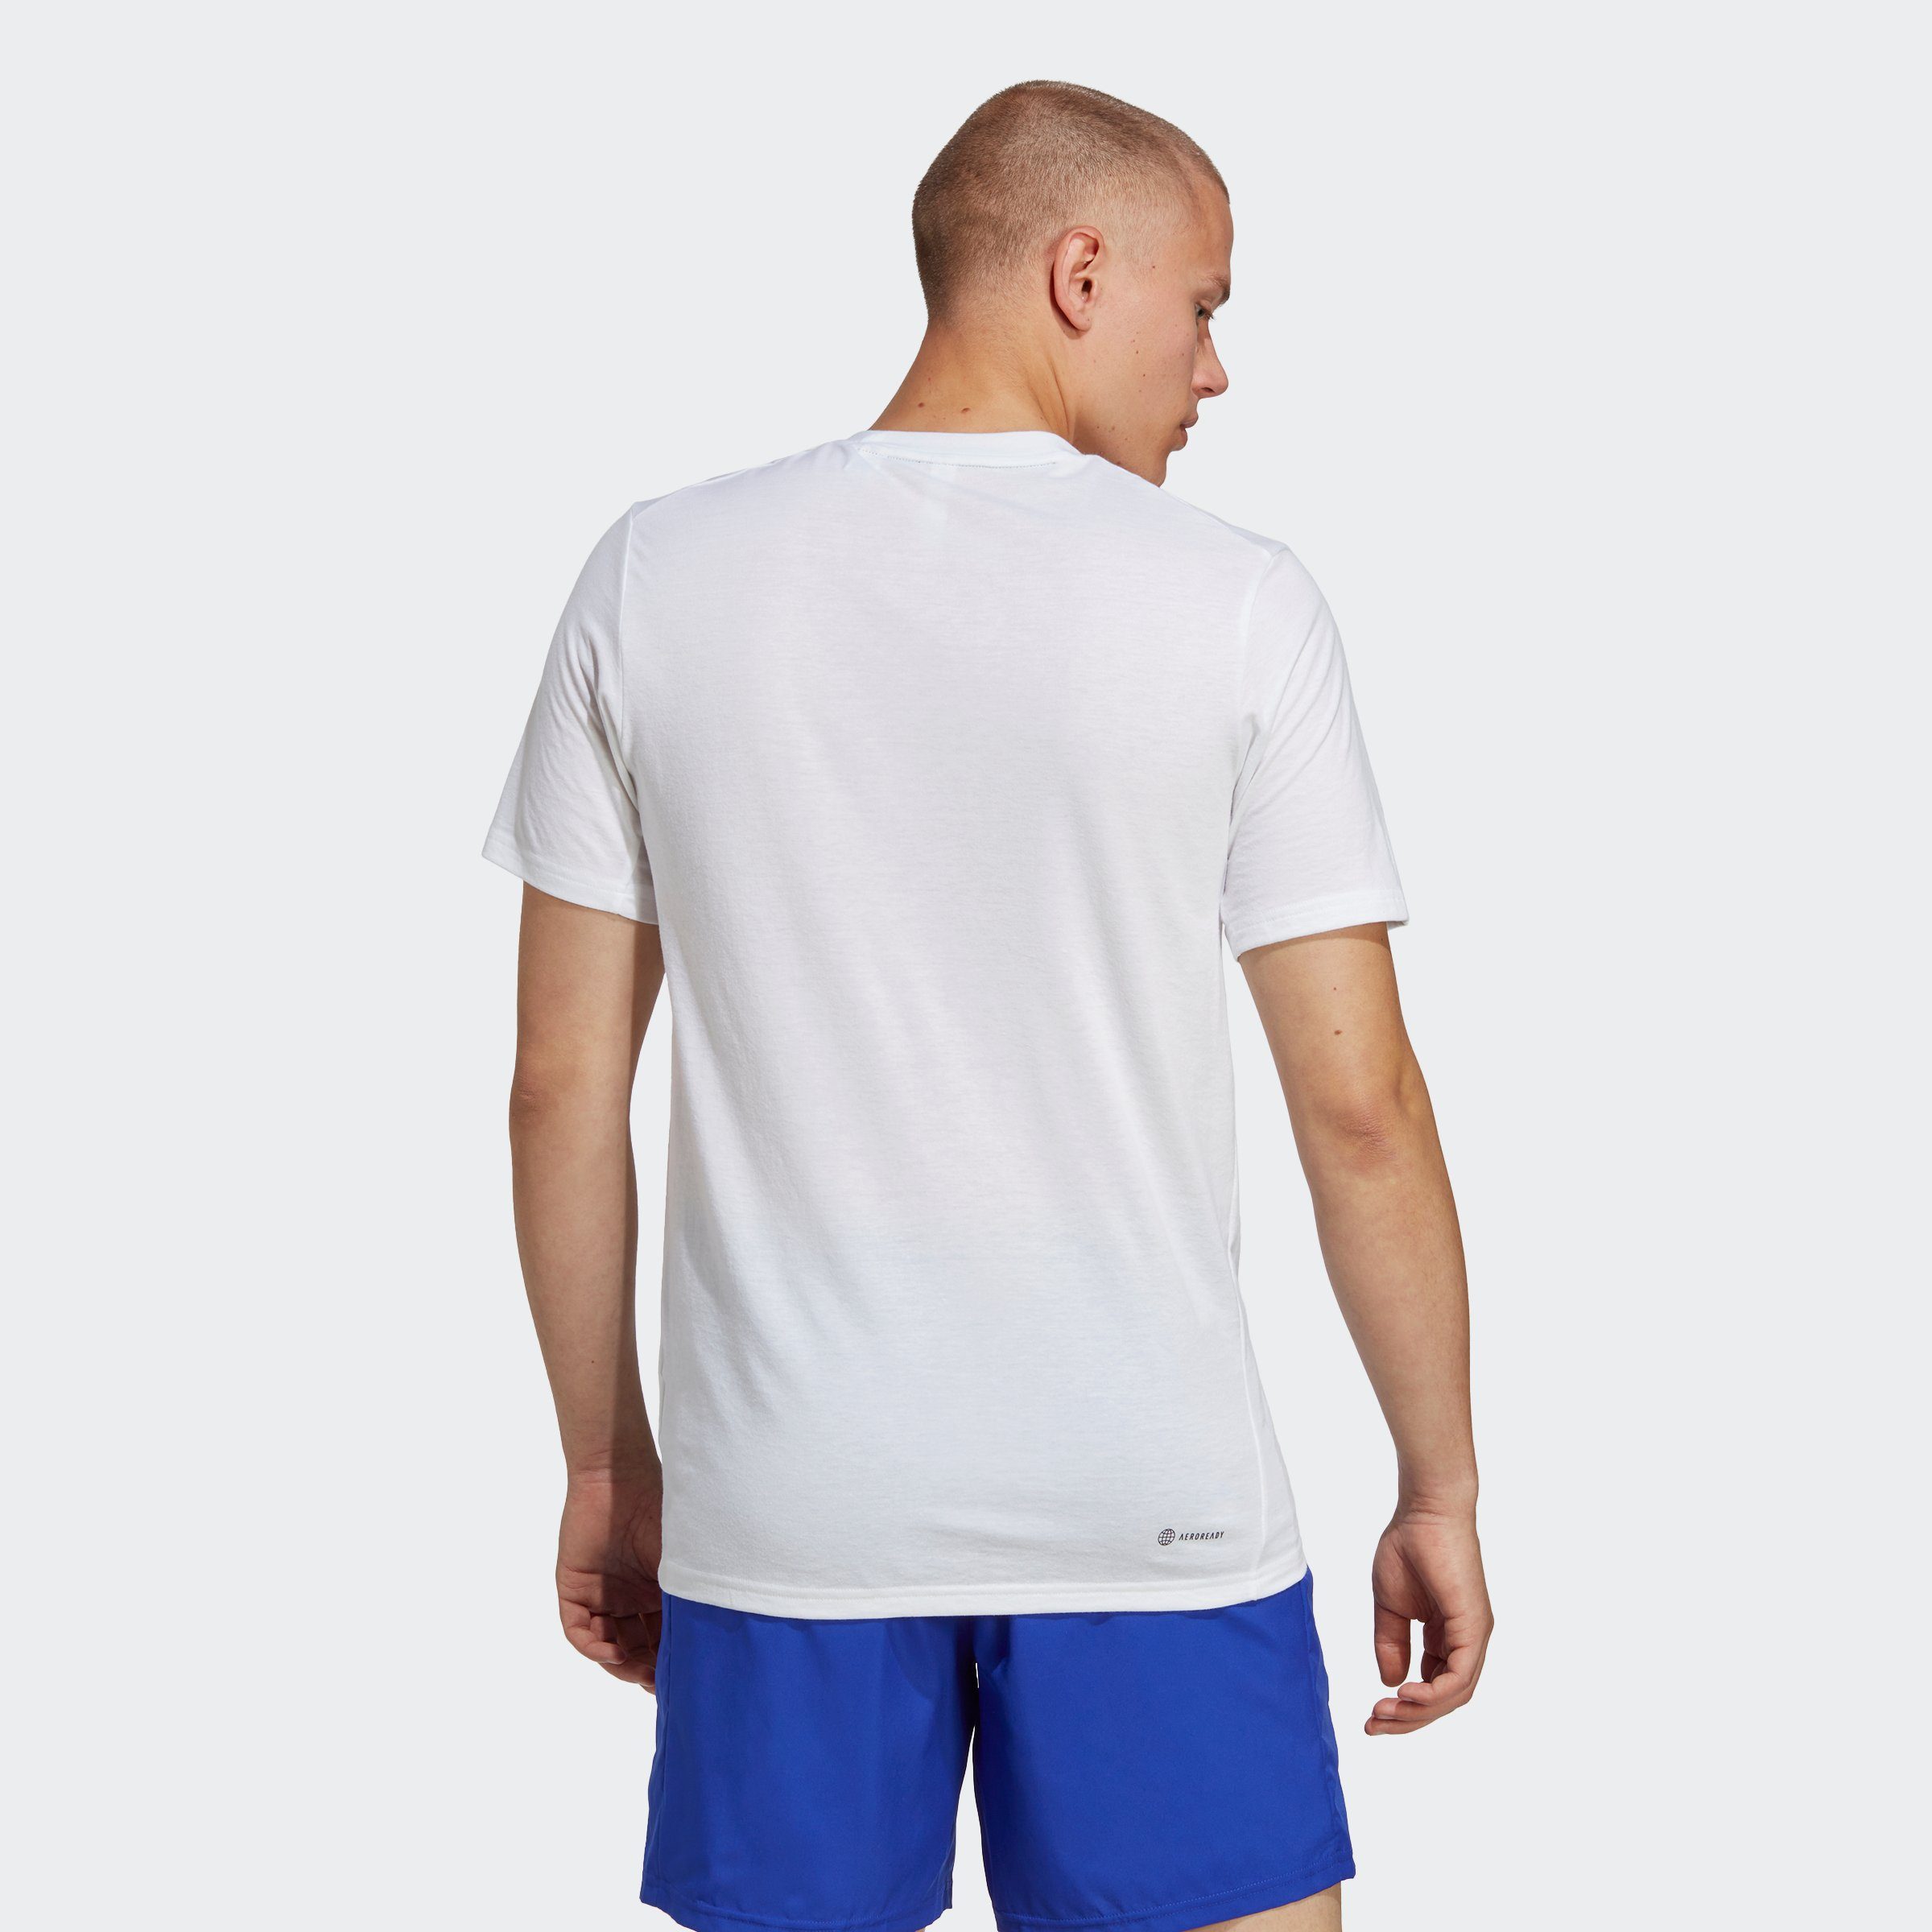 TR-ES T-Shirt FR T White / Performance adidas Black